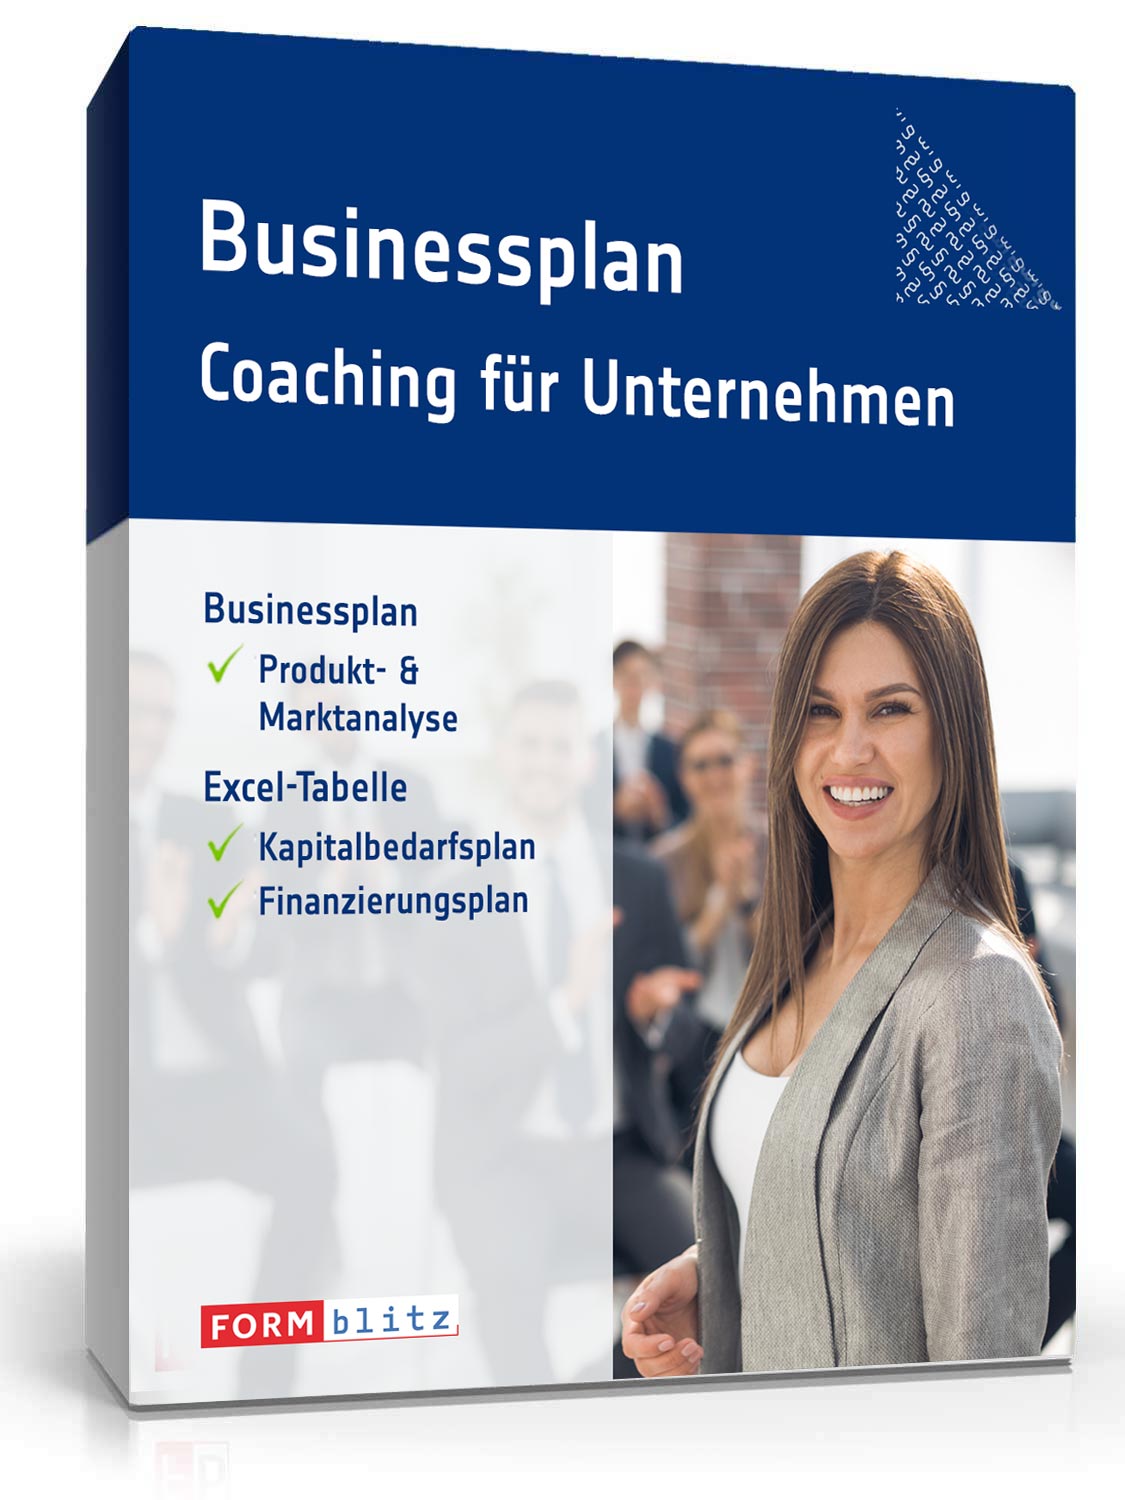 Hauptbild des Produkts: Businessplan Coaching-Unternehmen